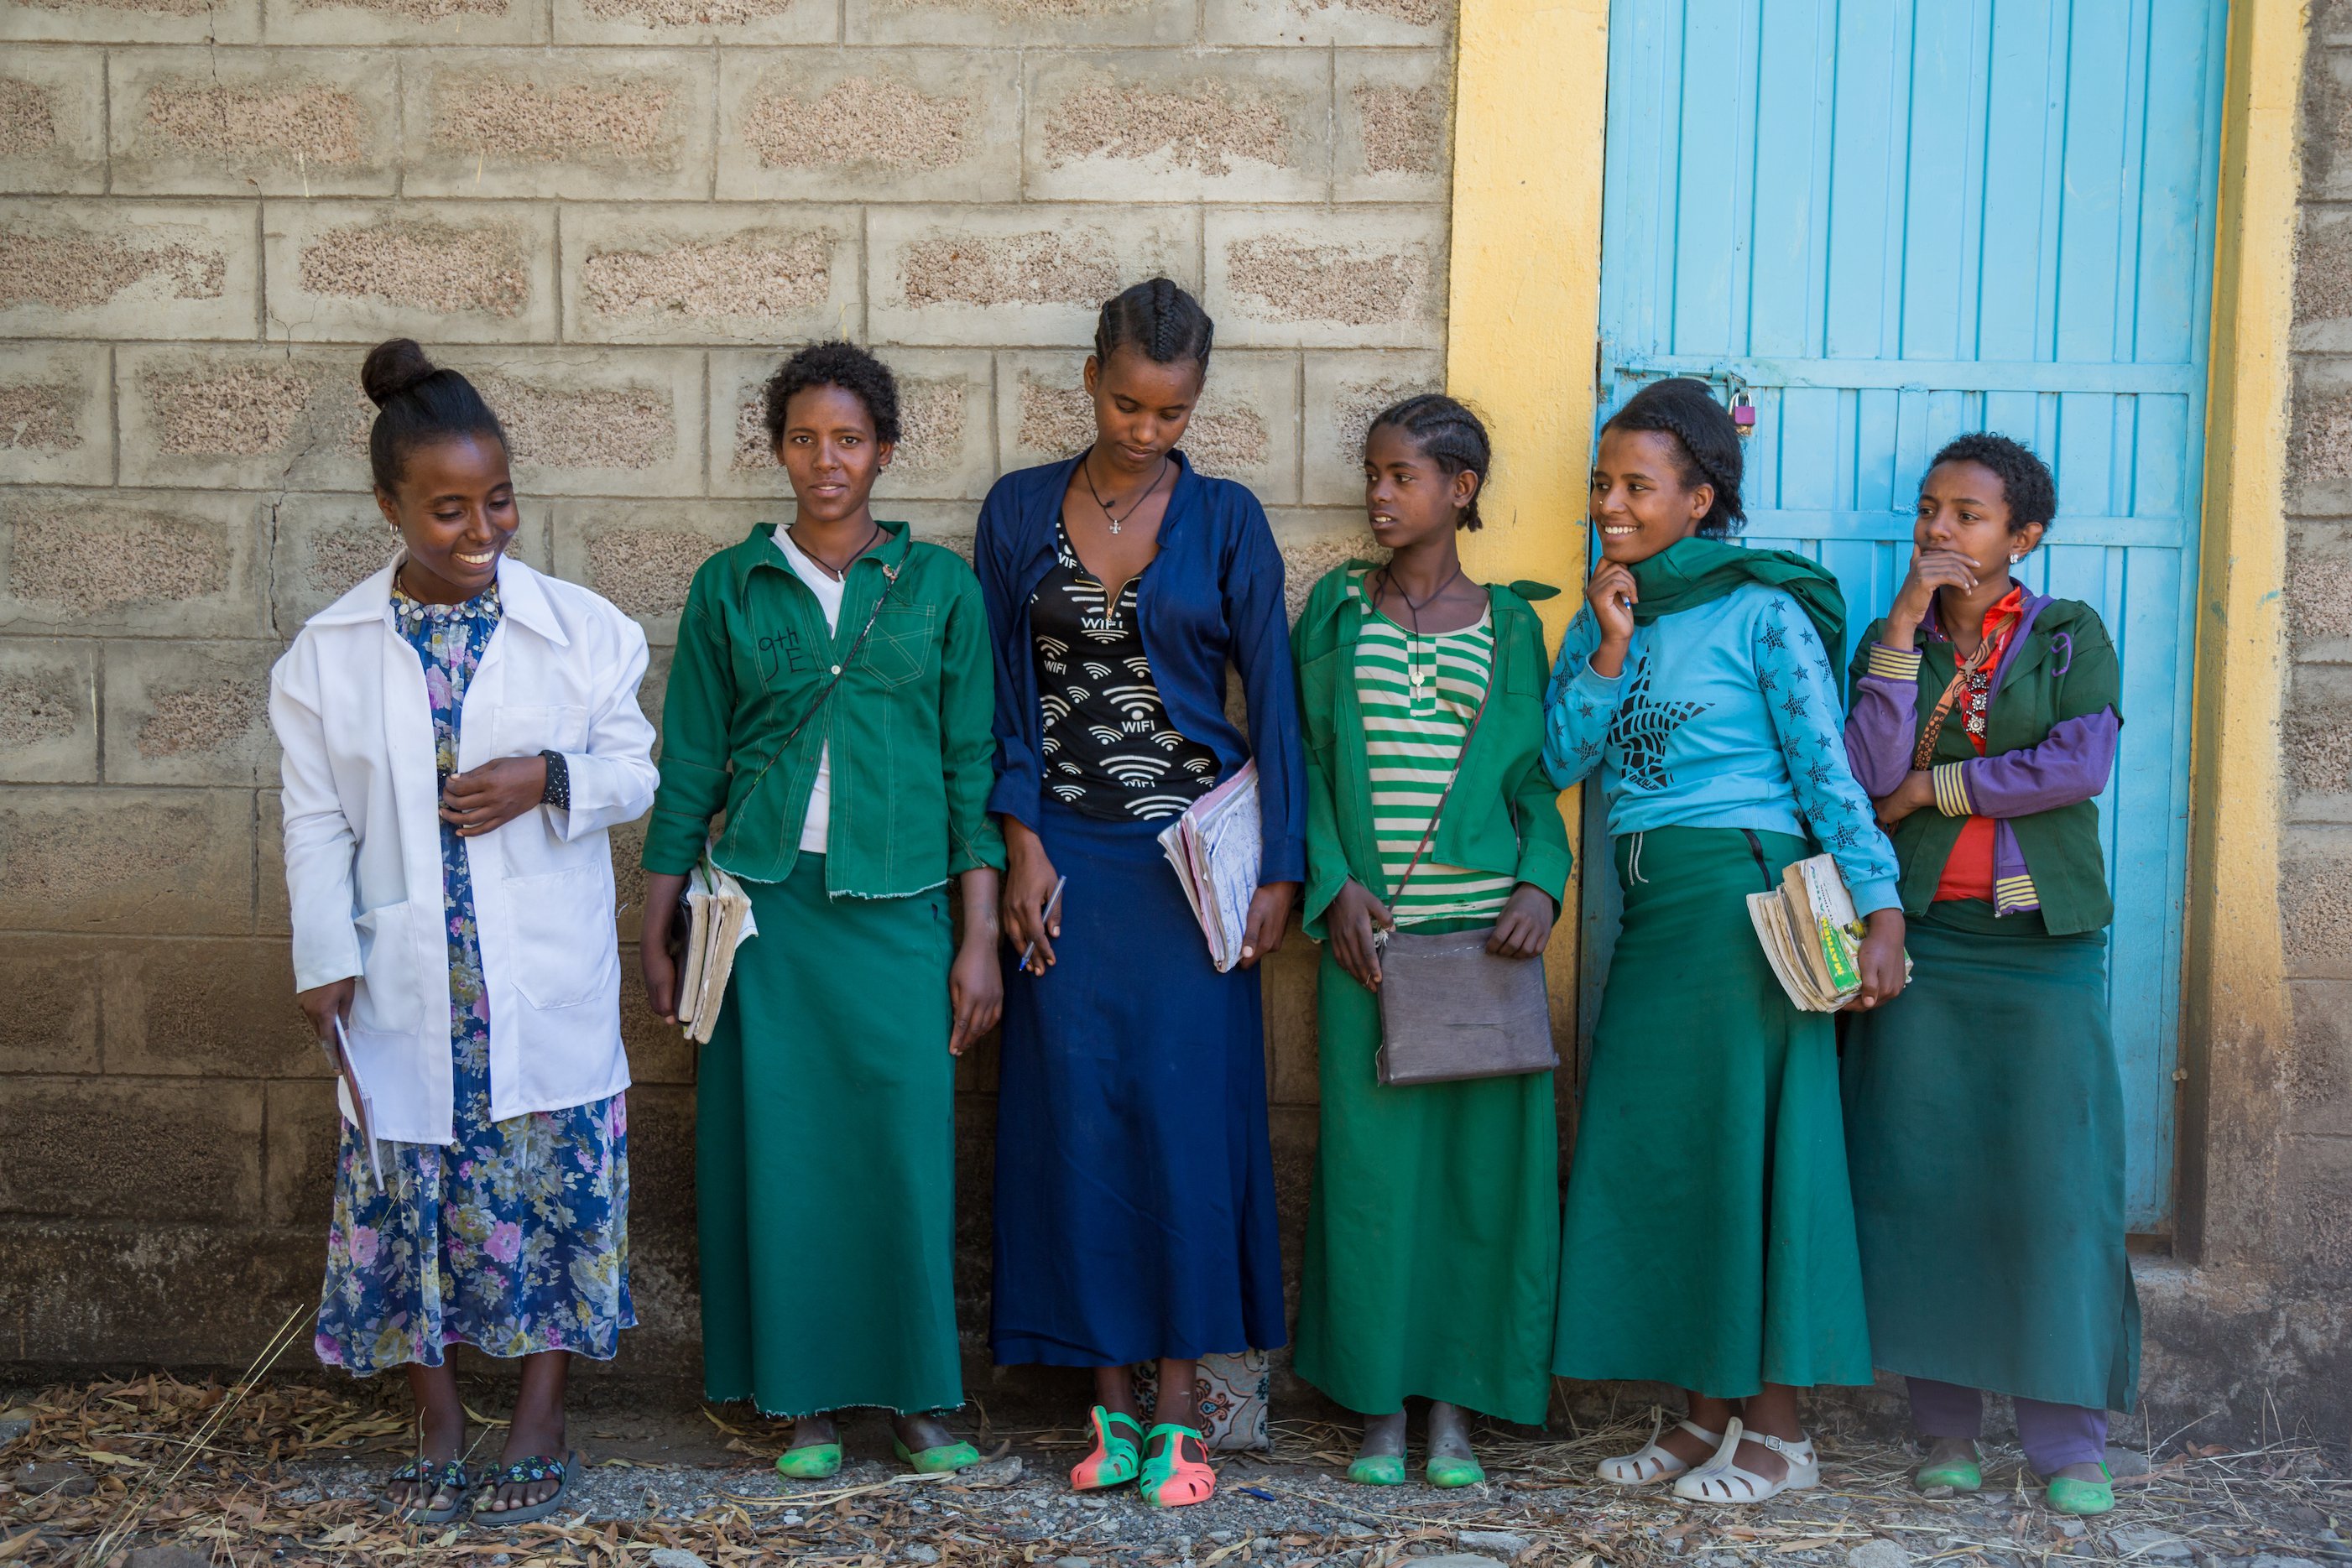 Secondary school girls’ club in Amhara region, Ethiopia